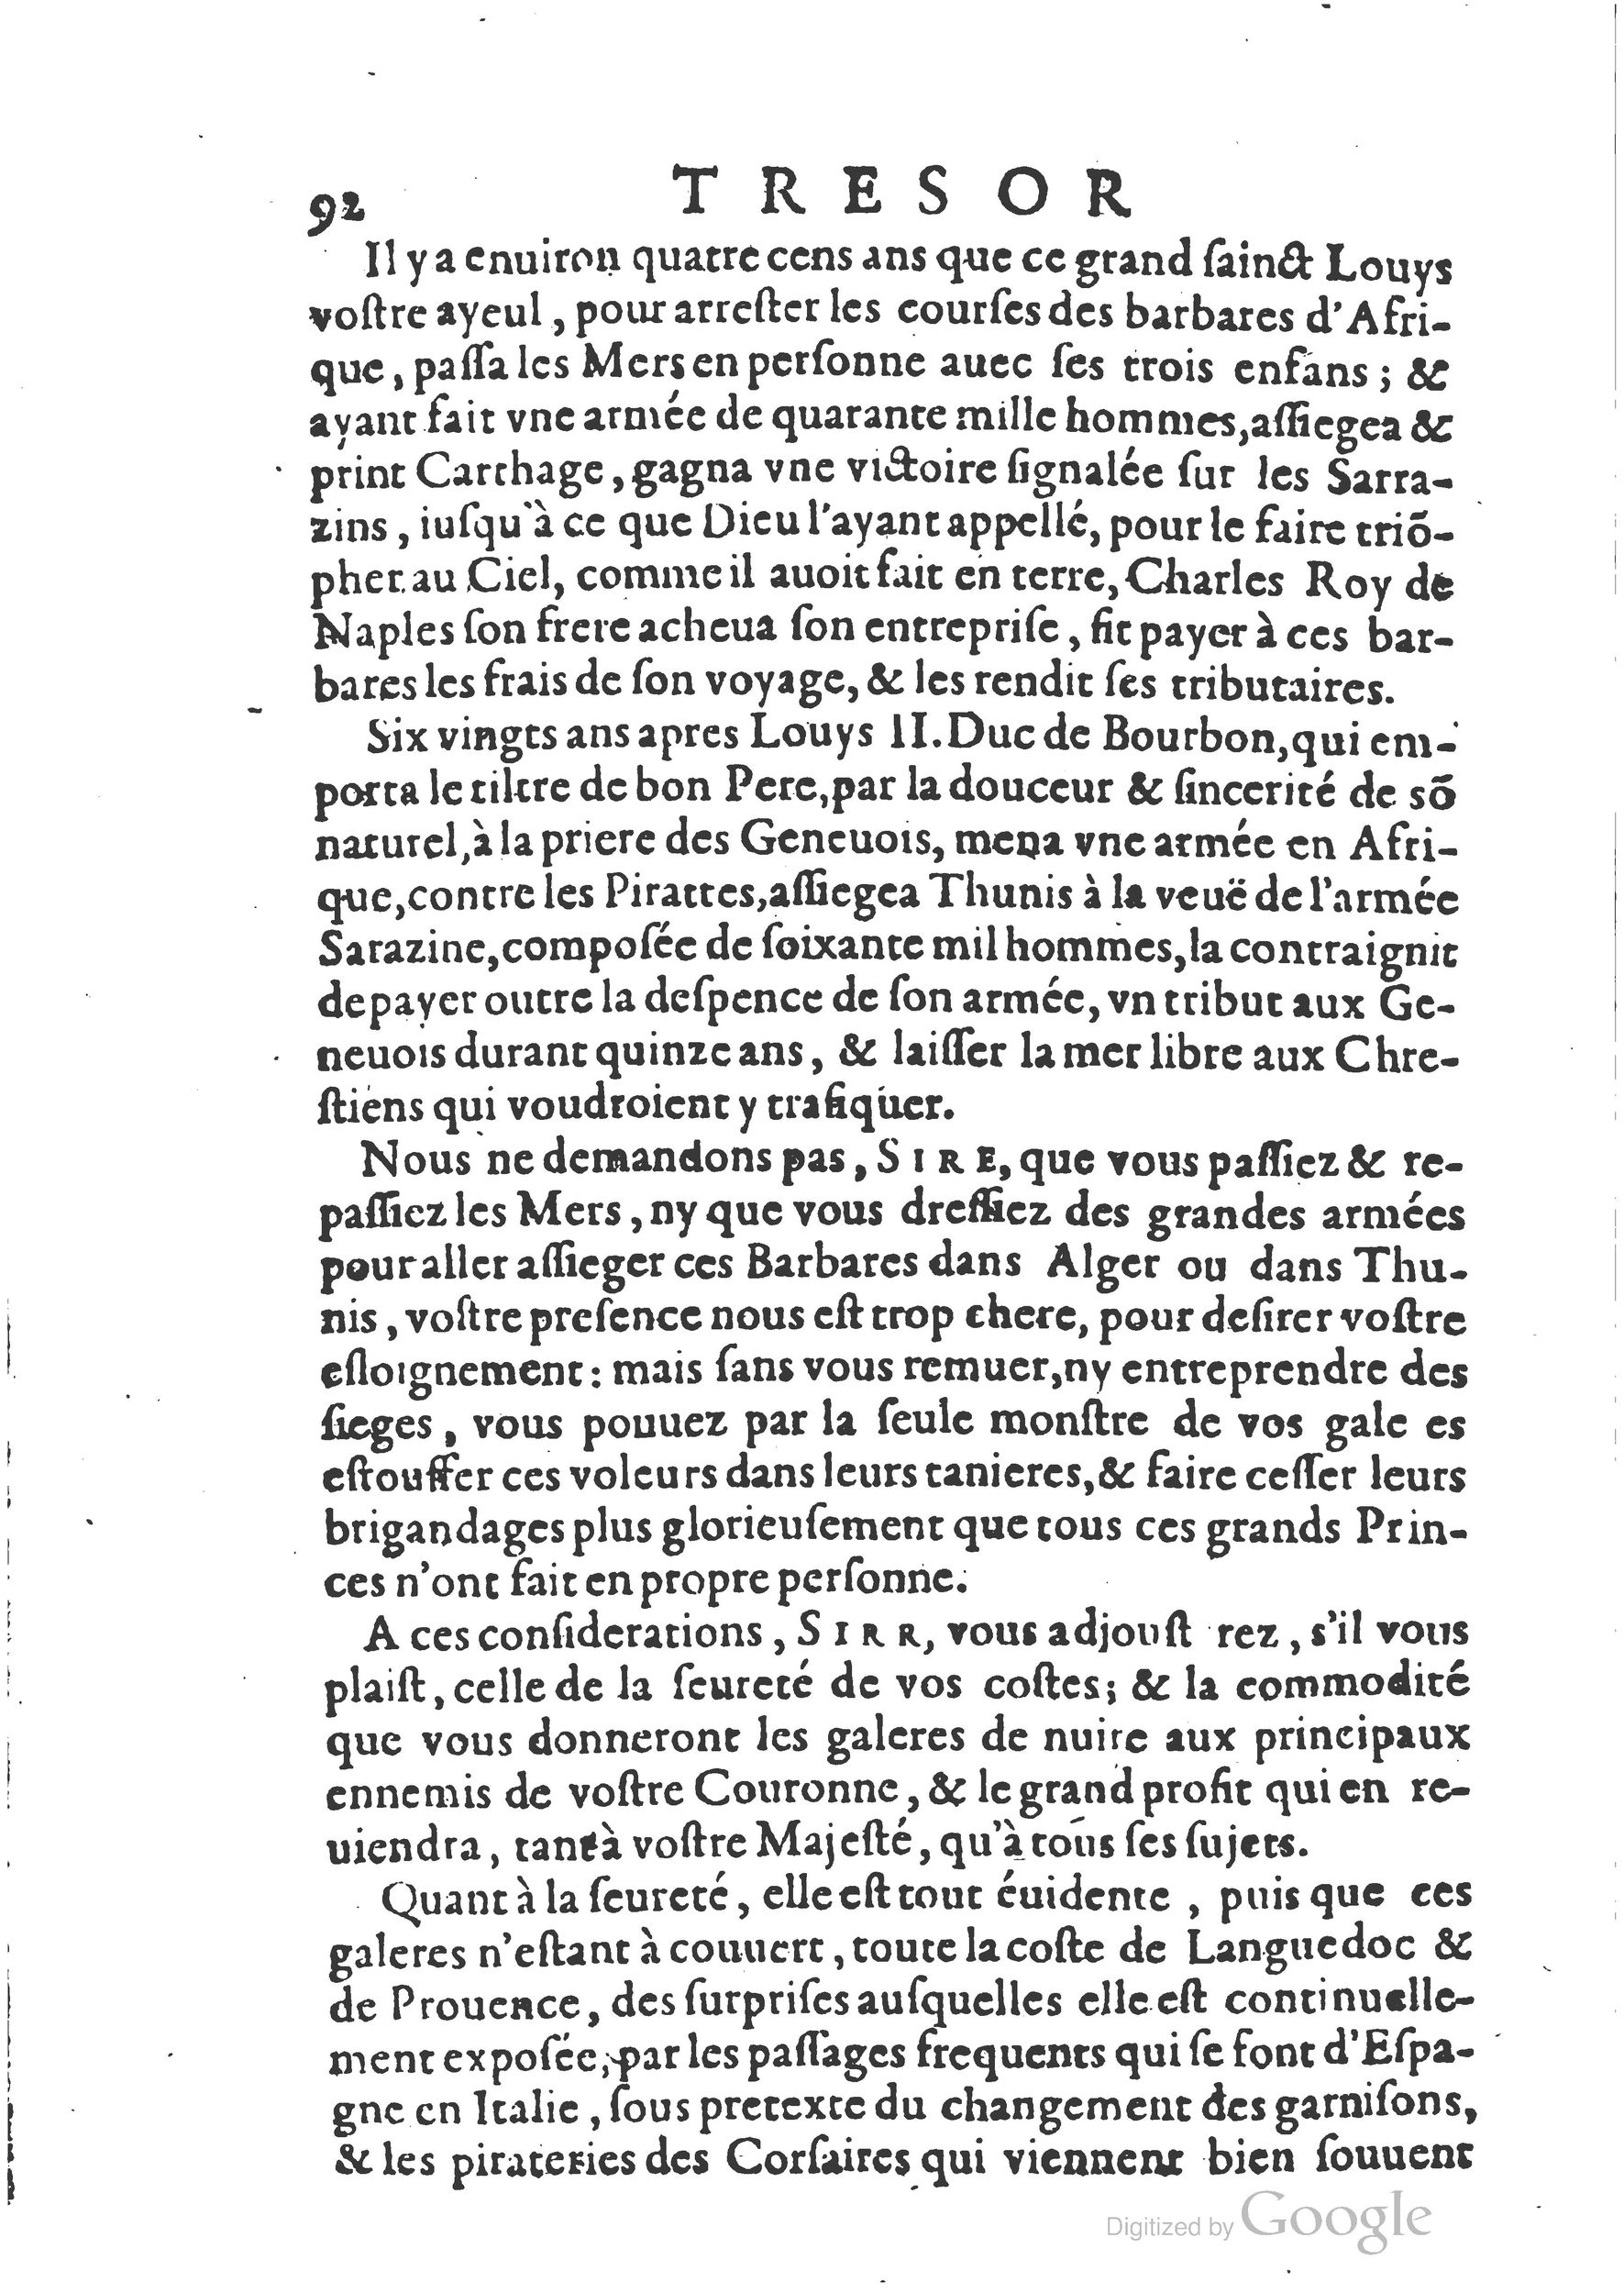 1654 Trésor des harangues, remontrances et oraisons funèbres Robin_BM Lyon_Page_343.jpg